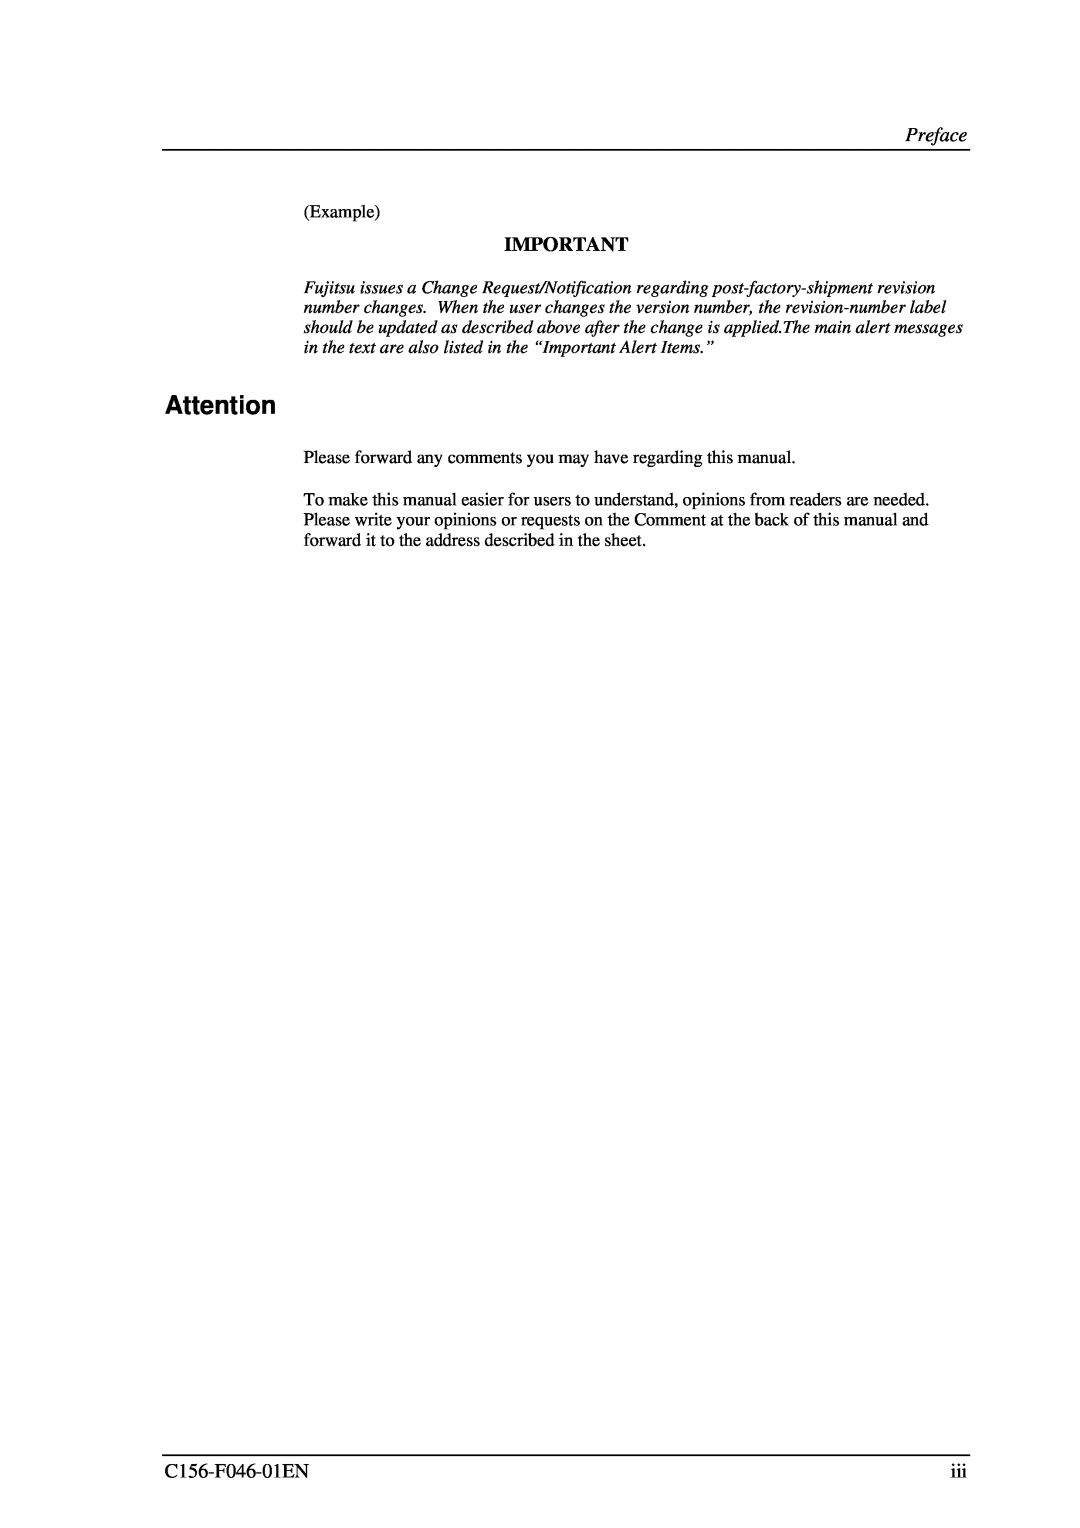 Fujitsu MDG3130UB, MDG3064UB manual Preface, Example 